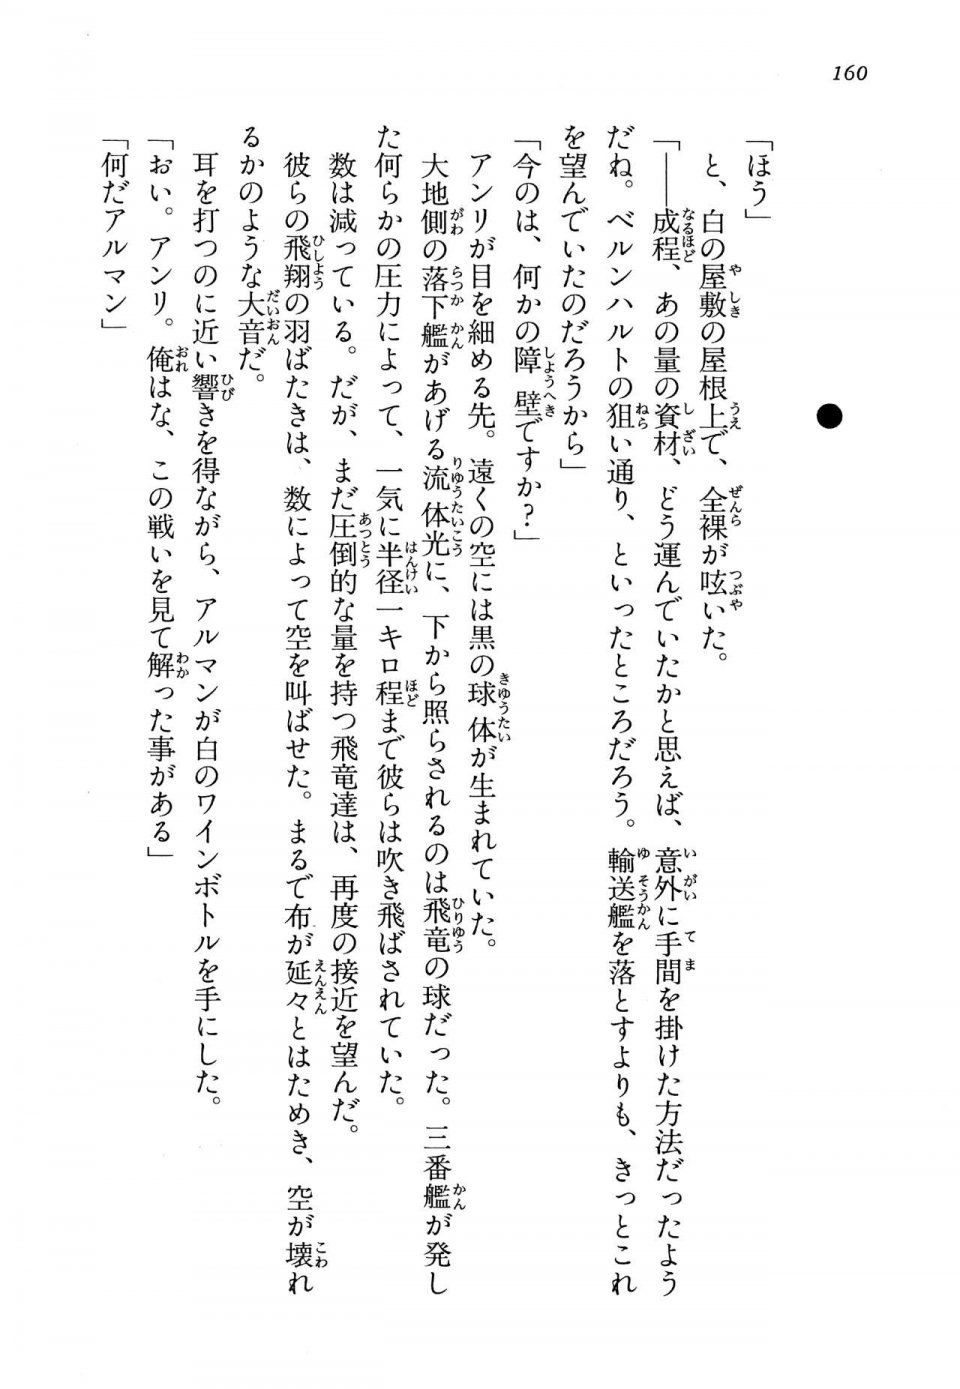 Kyoukai Senjou no Horizon LN Vol 13(6A) - Photo #160